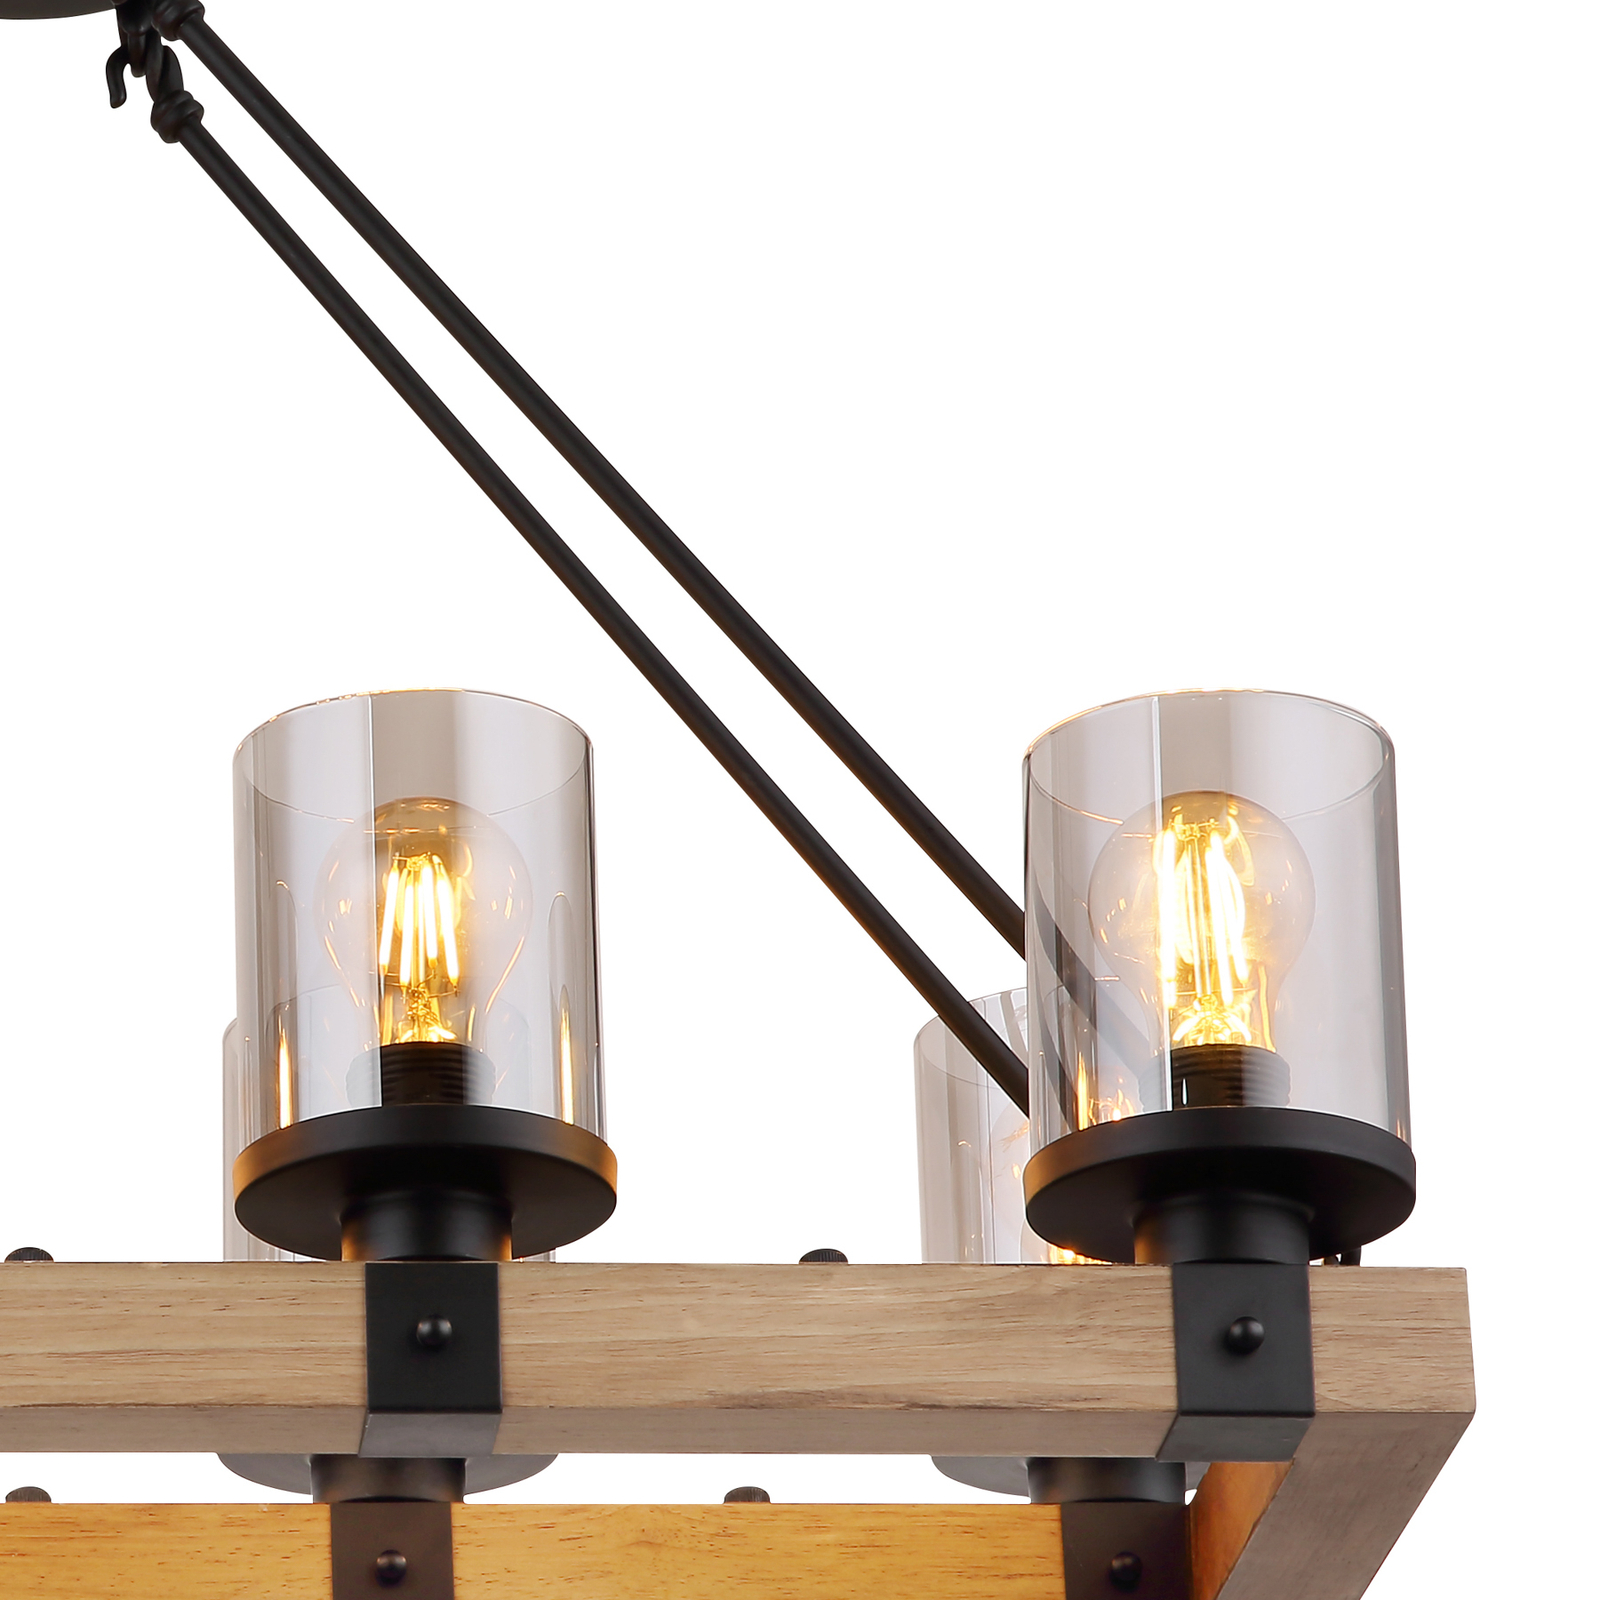 Candeeiro suspenso roxo com estrutura de madeira, oito luzes